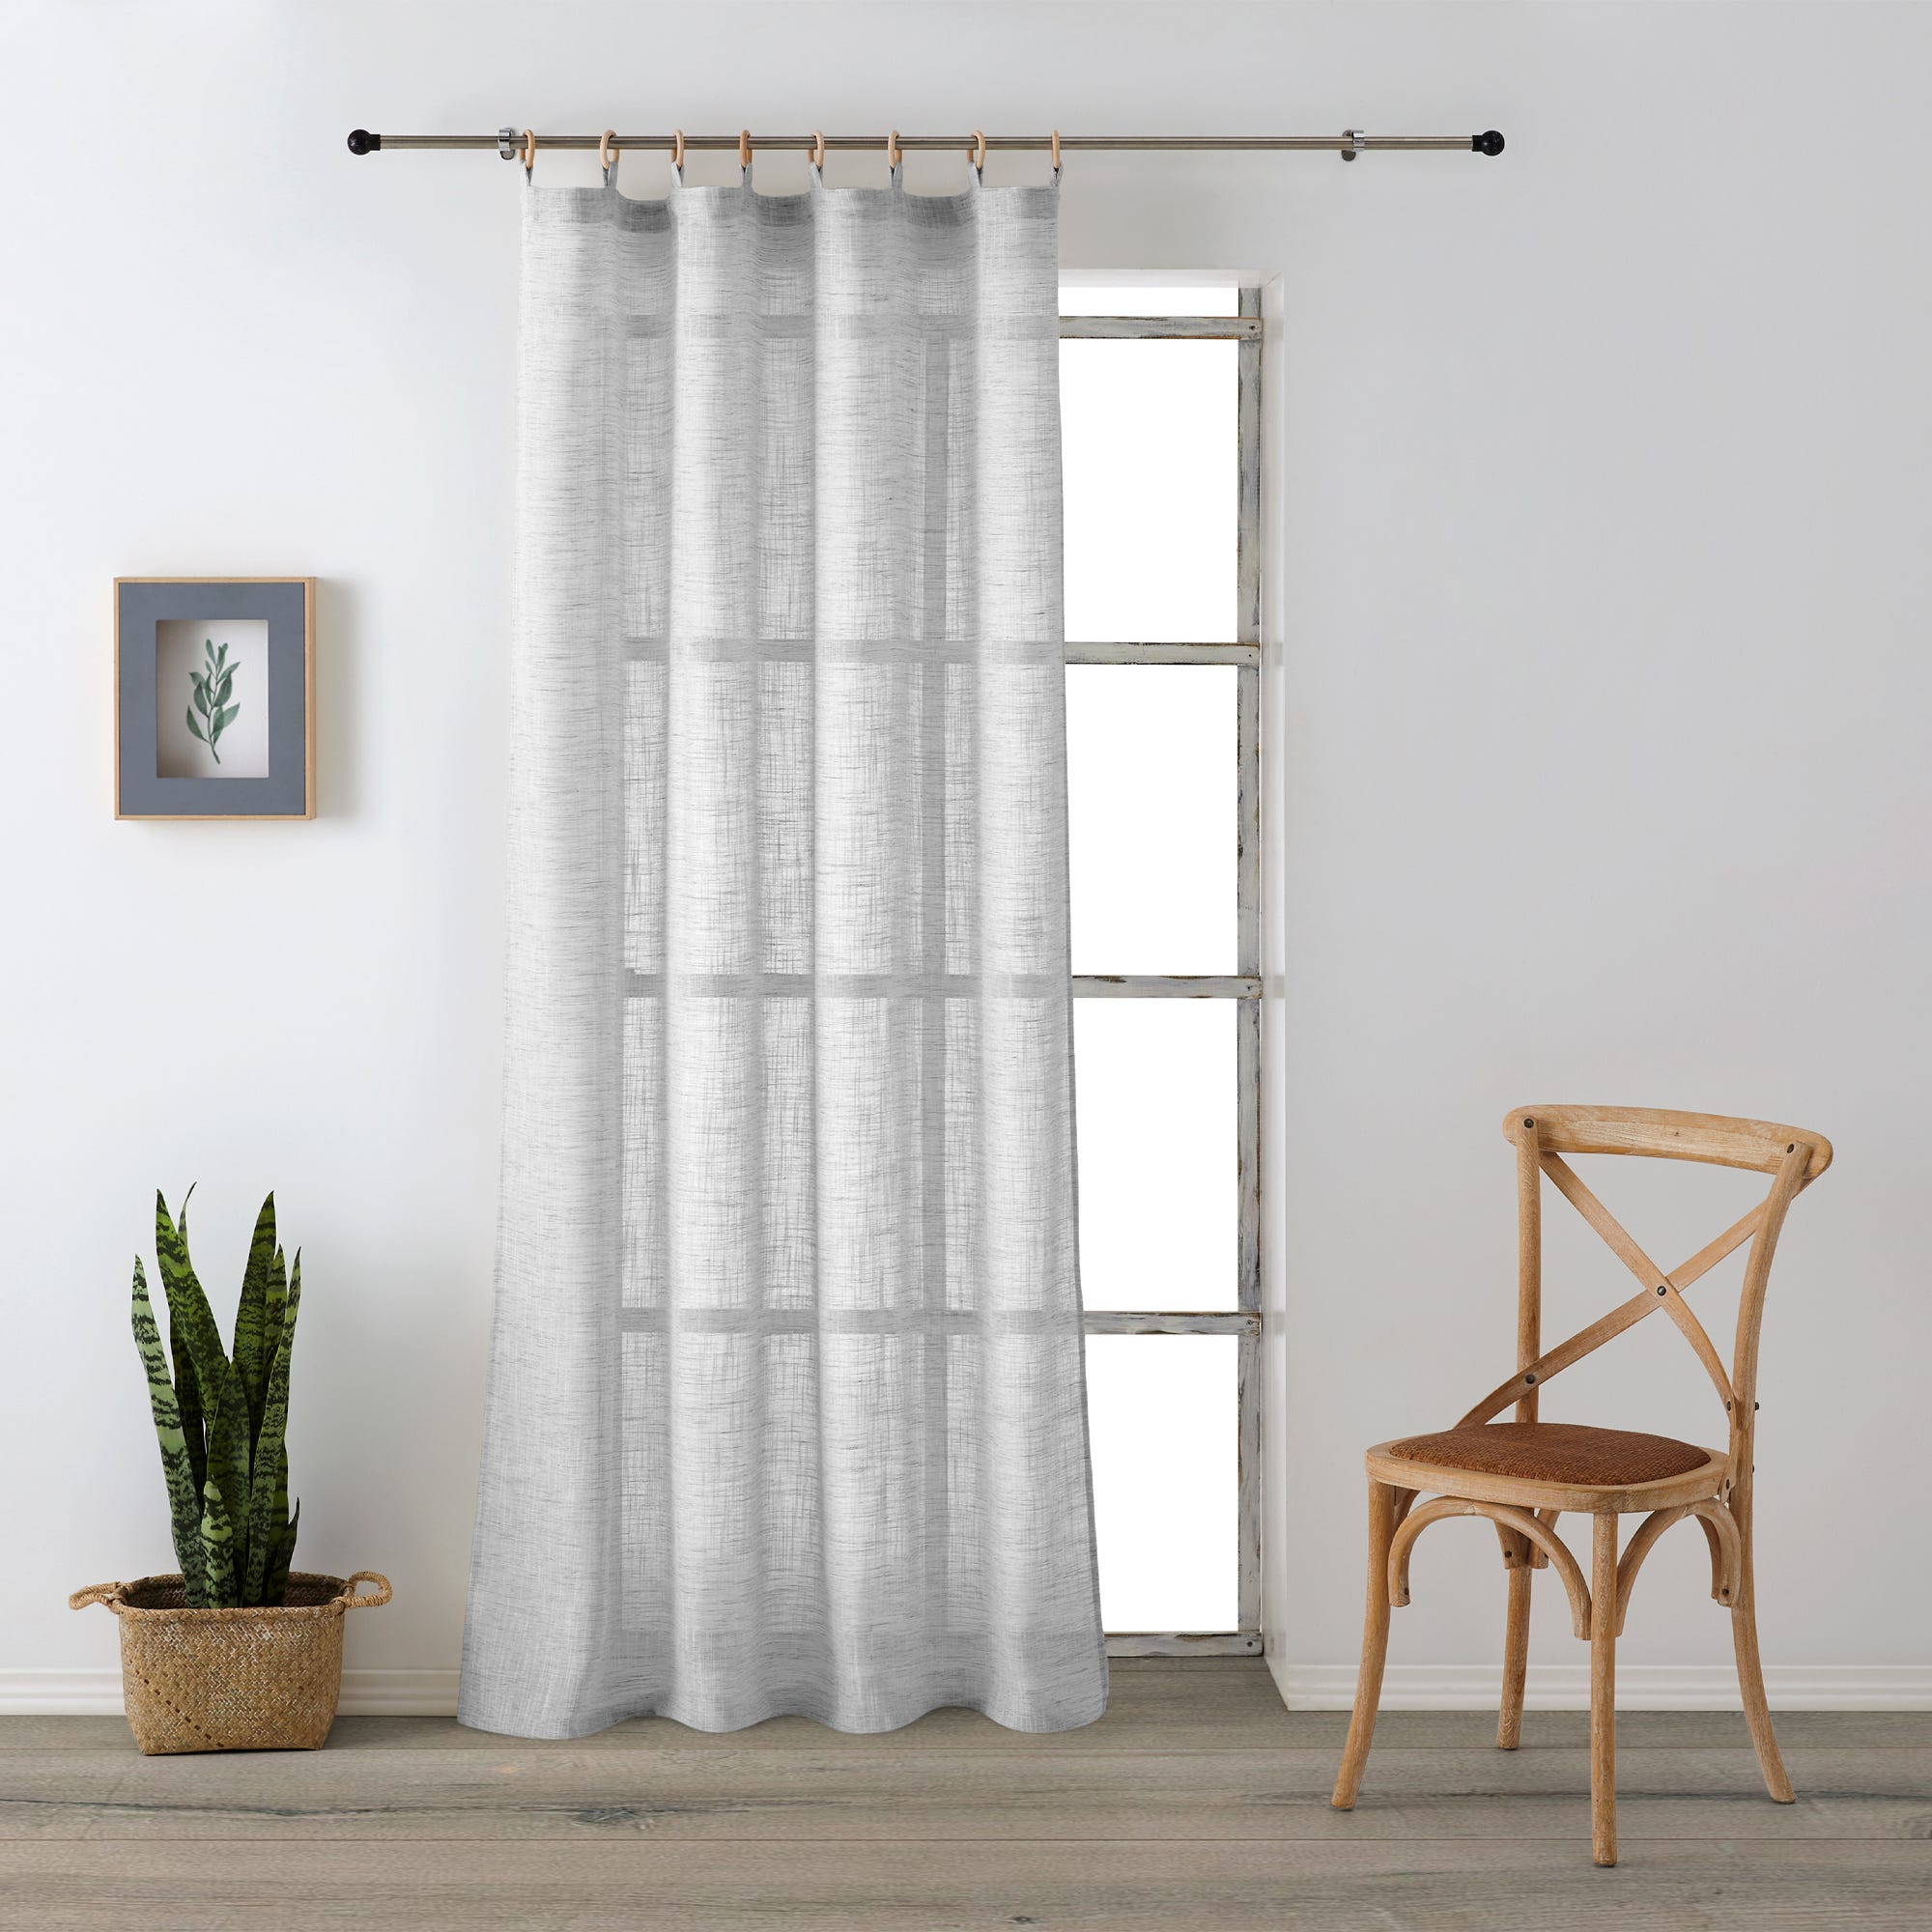 anillas cortinas – Compra anillas cortinas con envío gratis en